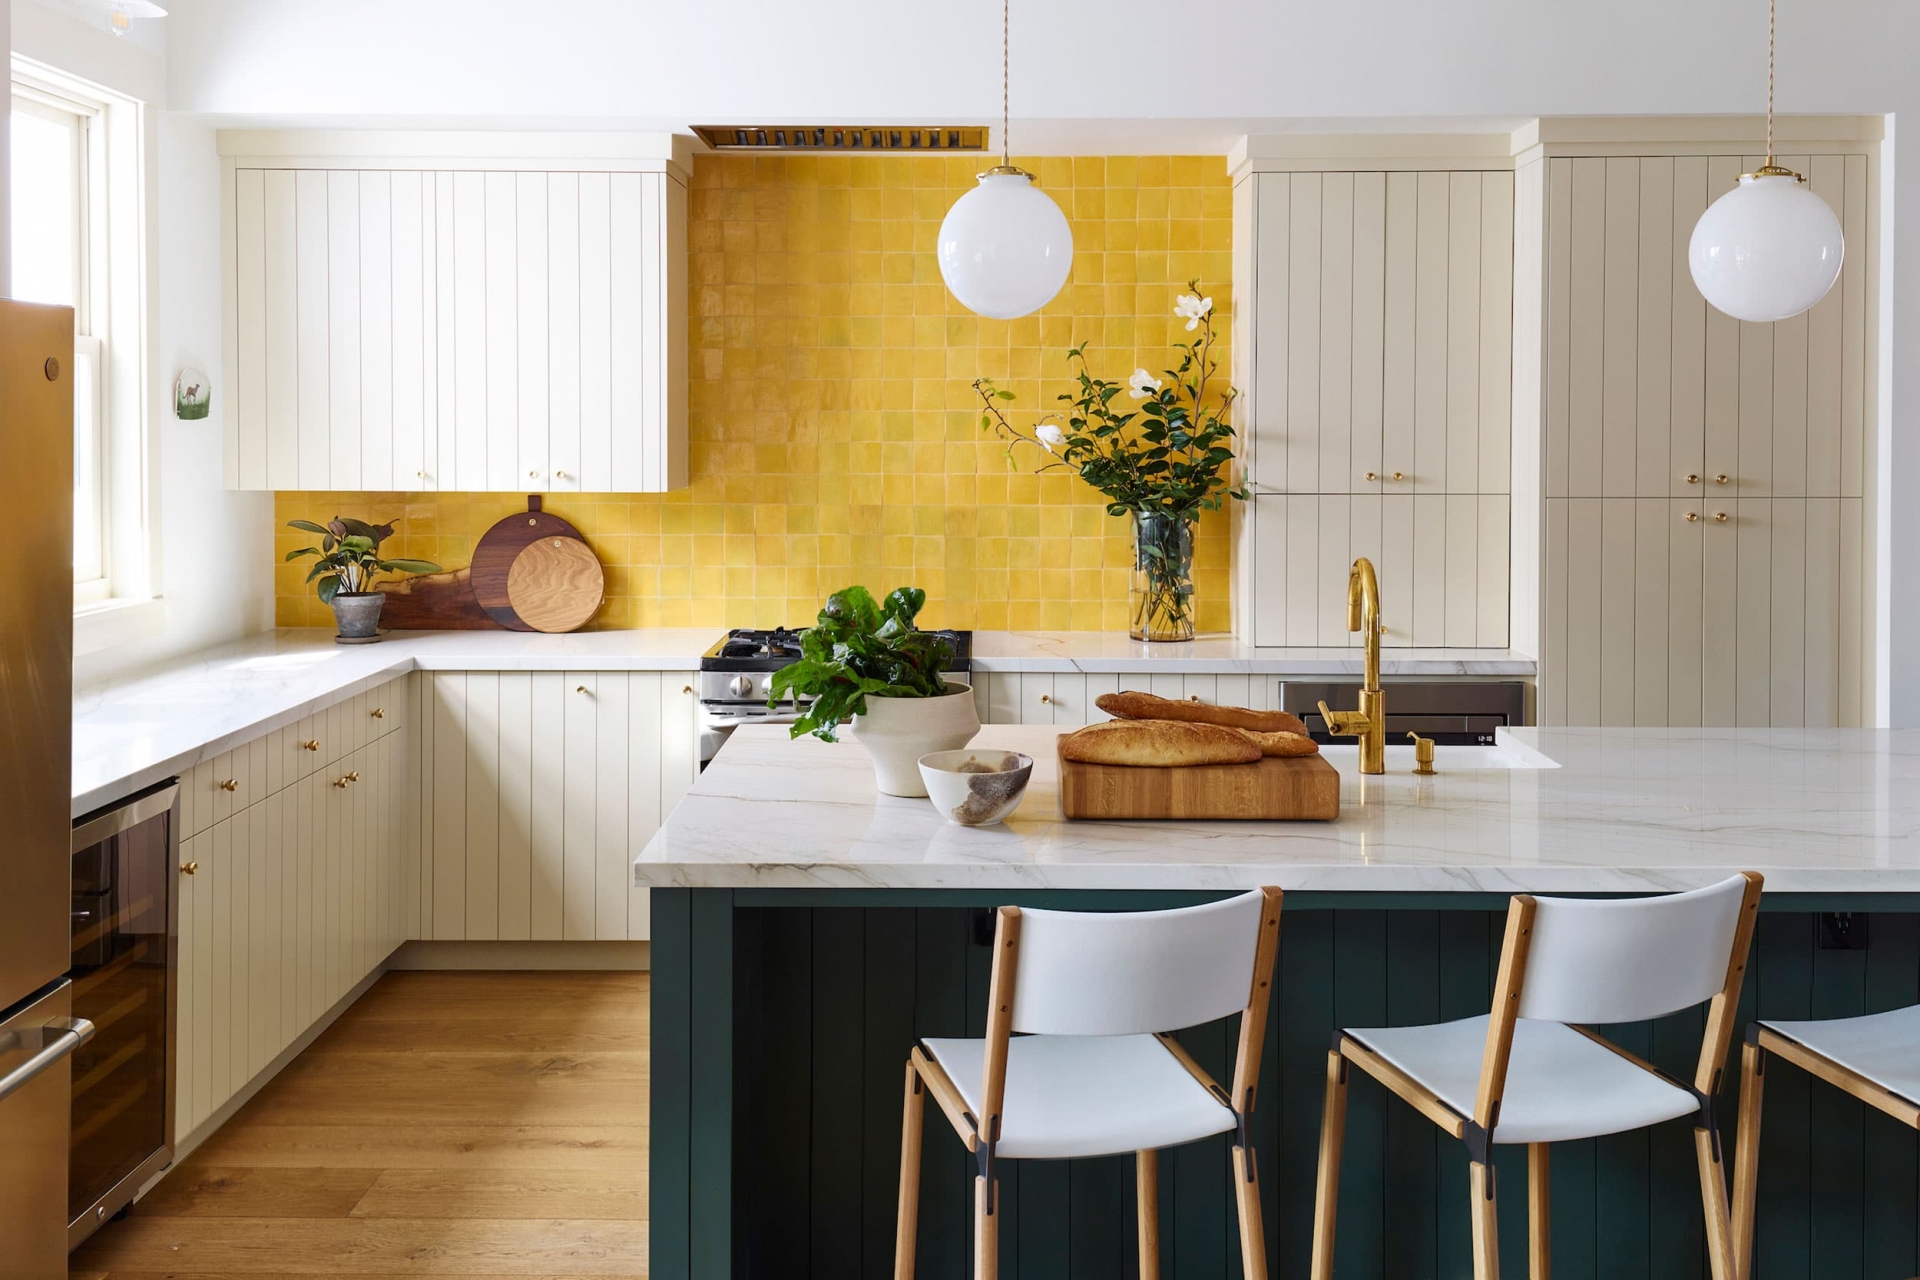 Phòng bếp với sự phối màu đẹp như một bức tranh vẽ với gam màu trắng chủ đạo cho hệ tủ bếp, mặt bàn, đảo bếp màu xanh lá cây đậm, cùng với đó là khu vực backsplash ốp những viên đá hình vuông màu vàng nhỏ nhắn, sáng rực cả góc phòng.